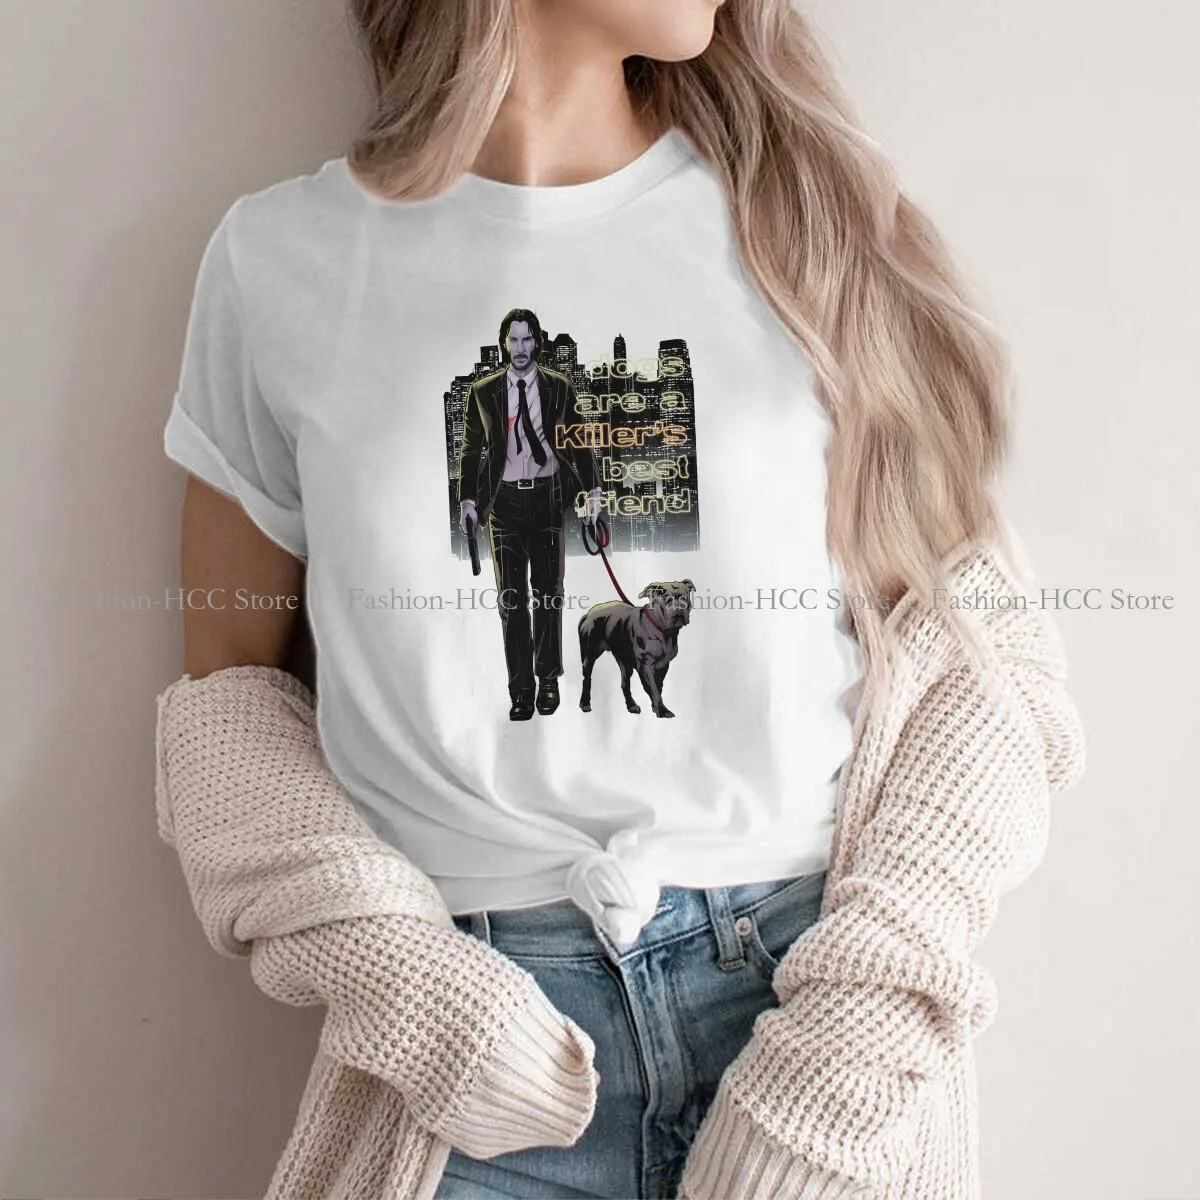 

Мужская классическая Уникальная футболка из полиэстера, футболка с изображением Джона фитиля из фильма, Высококачественная подарочная одежда в стиле хип-хоп, футболка